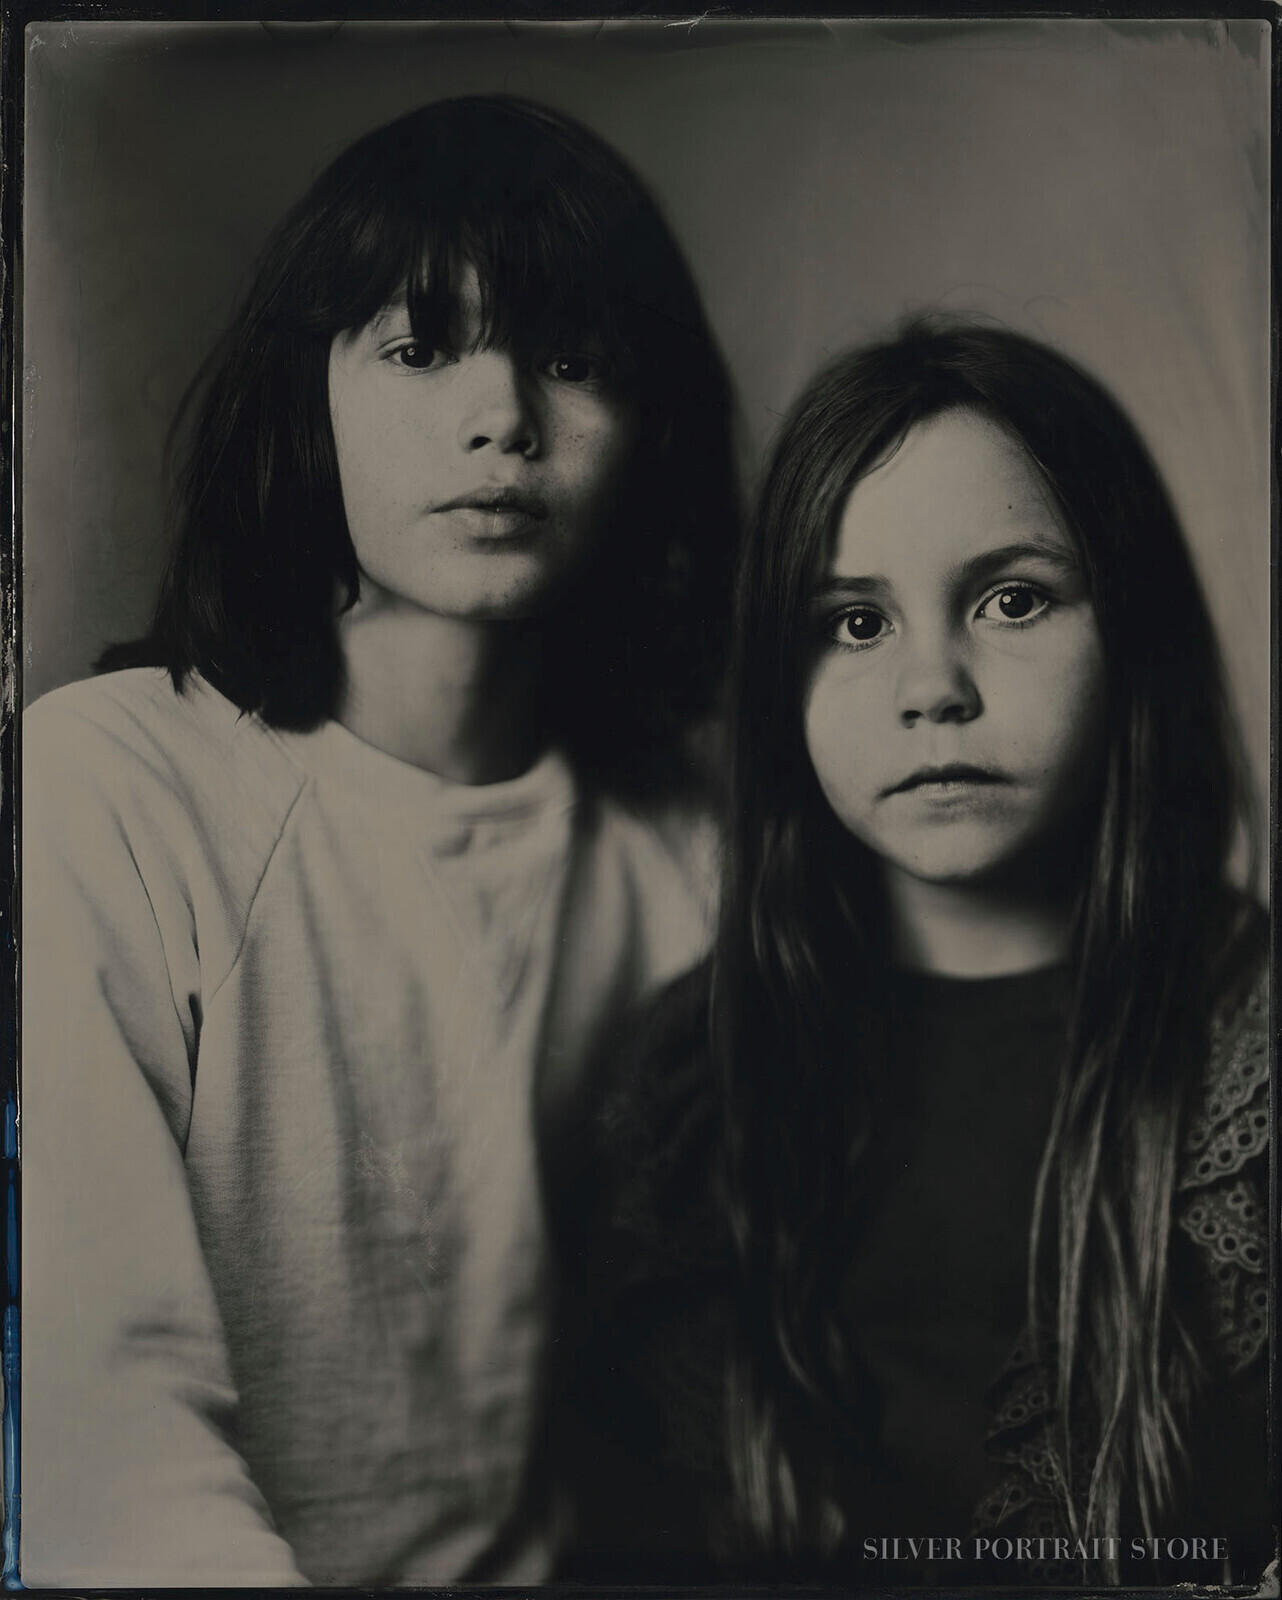 Vigo & Lea-Silver Portrait Store-Wet plate collodion-Tintype 20 x 25 cm.